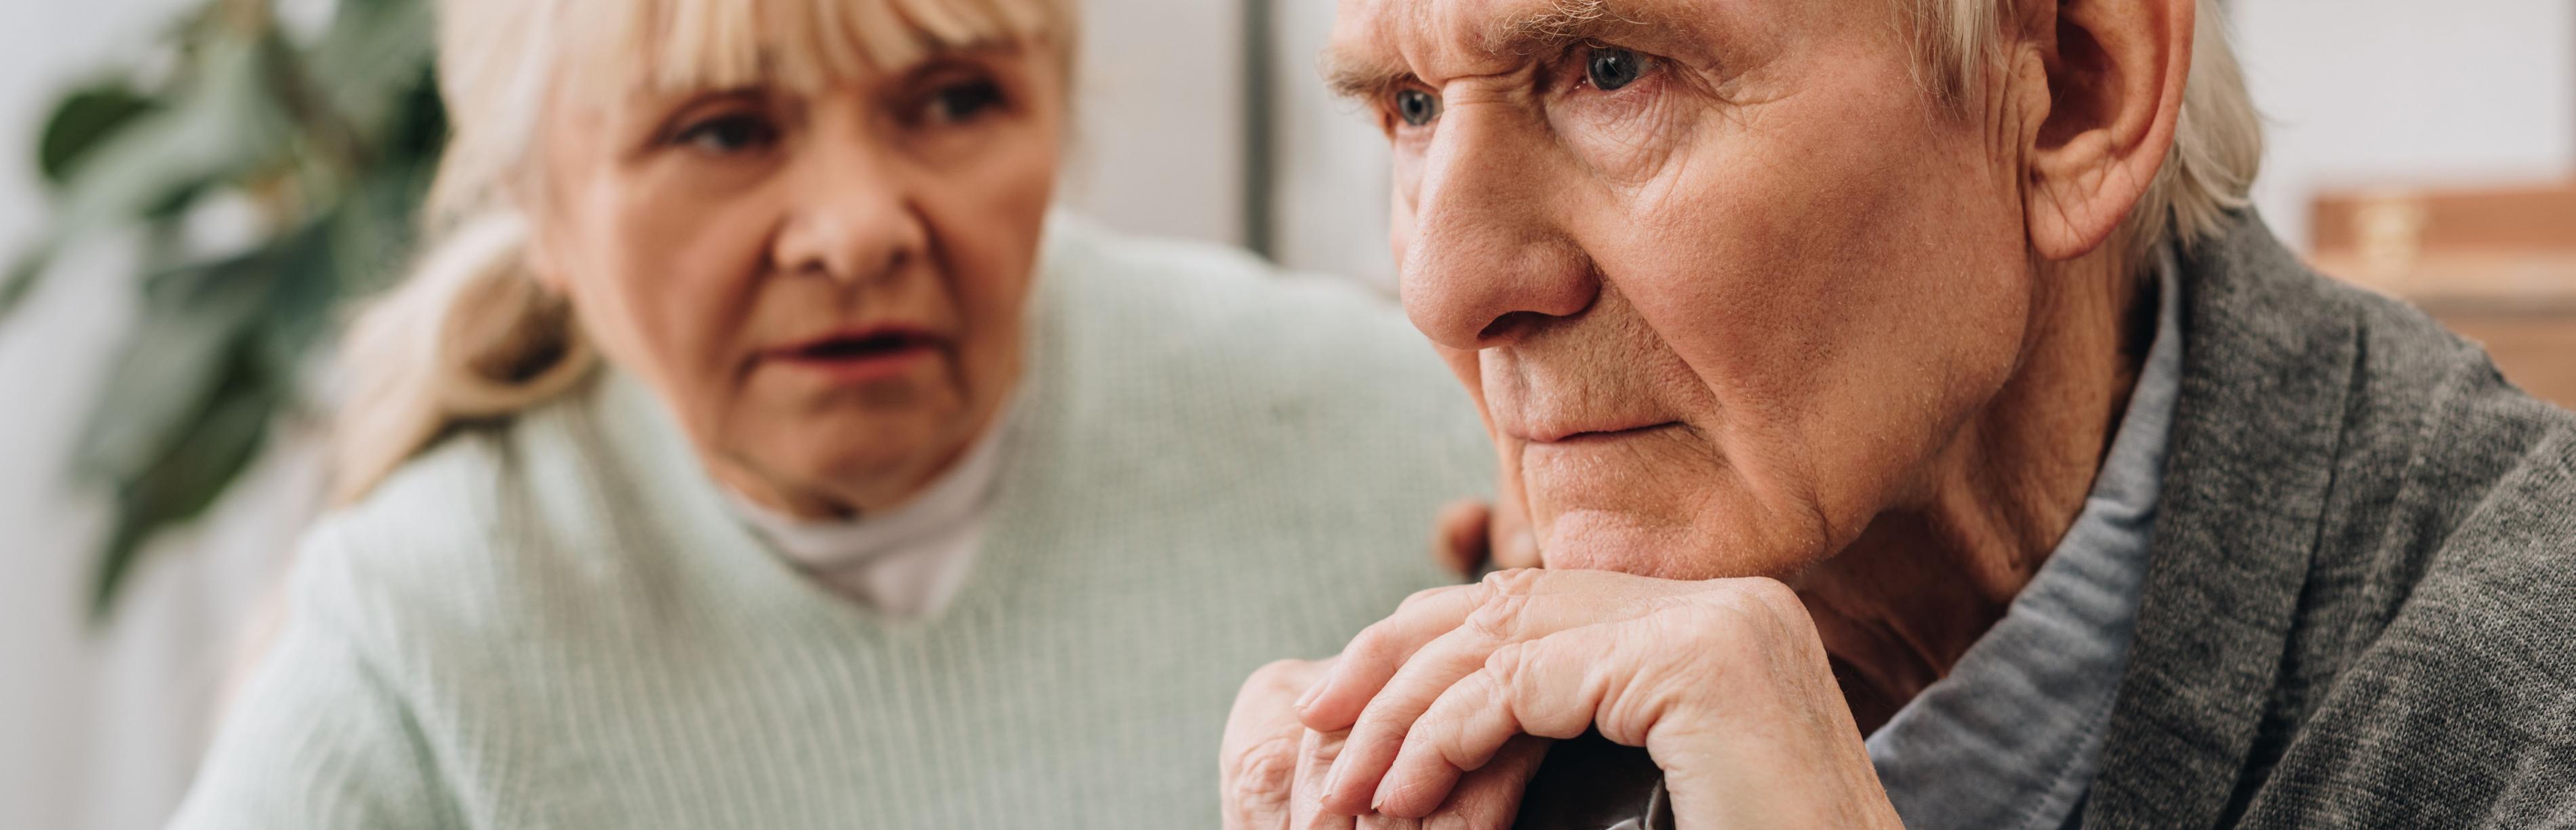 Eine Frau spricht zu einem alten Mann, der einen Gehstock umfasst hält und ernst geradeaus blickt. Vier von fünf pflegebedürftige Menschen werden zu Hause versorgt – oft von Angehörigen.